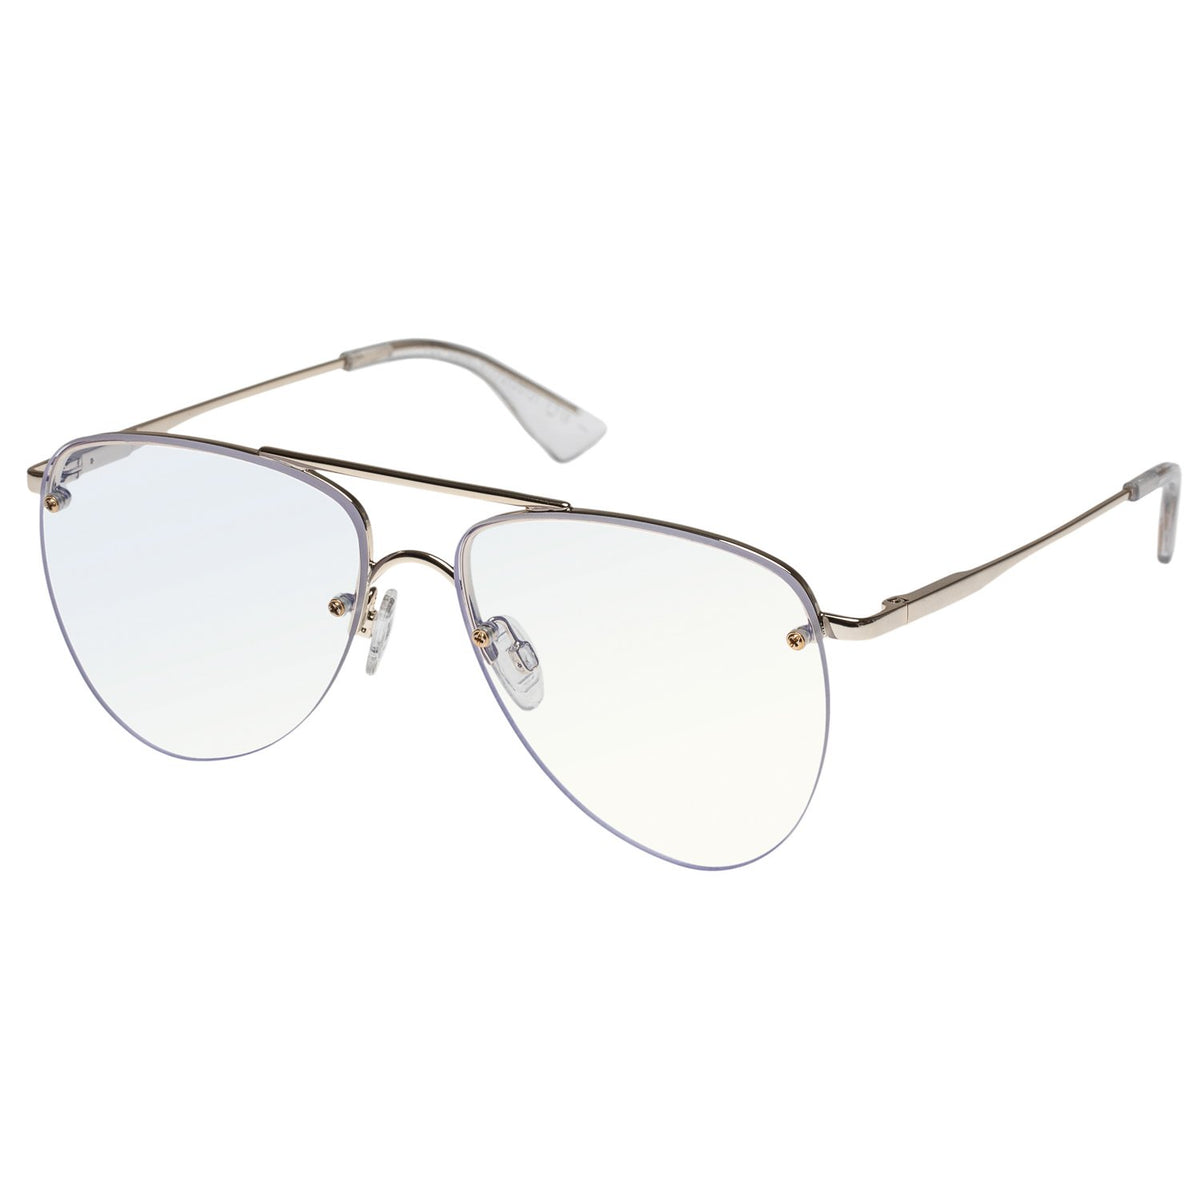 Le Specs - The Prince - Bright Gold - Aviator Sunglasses